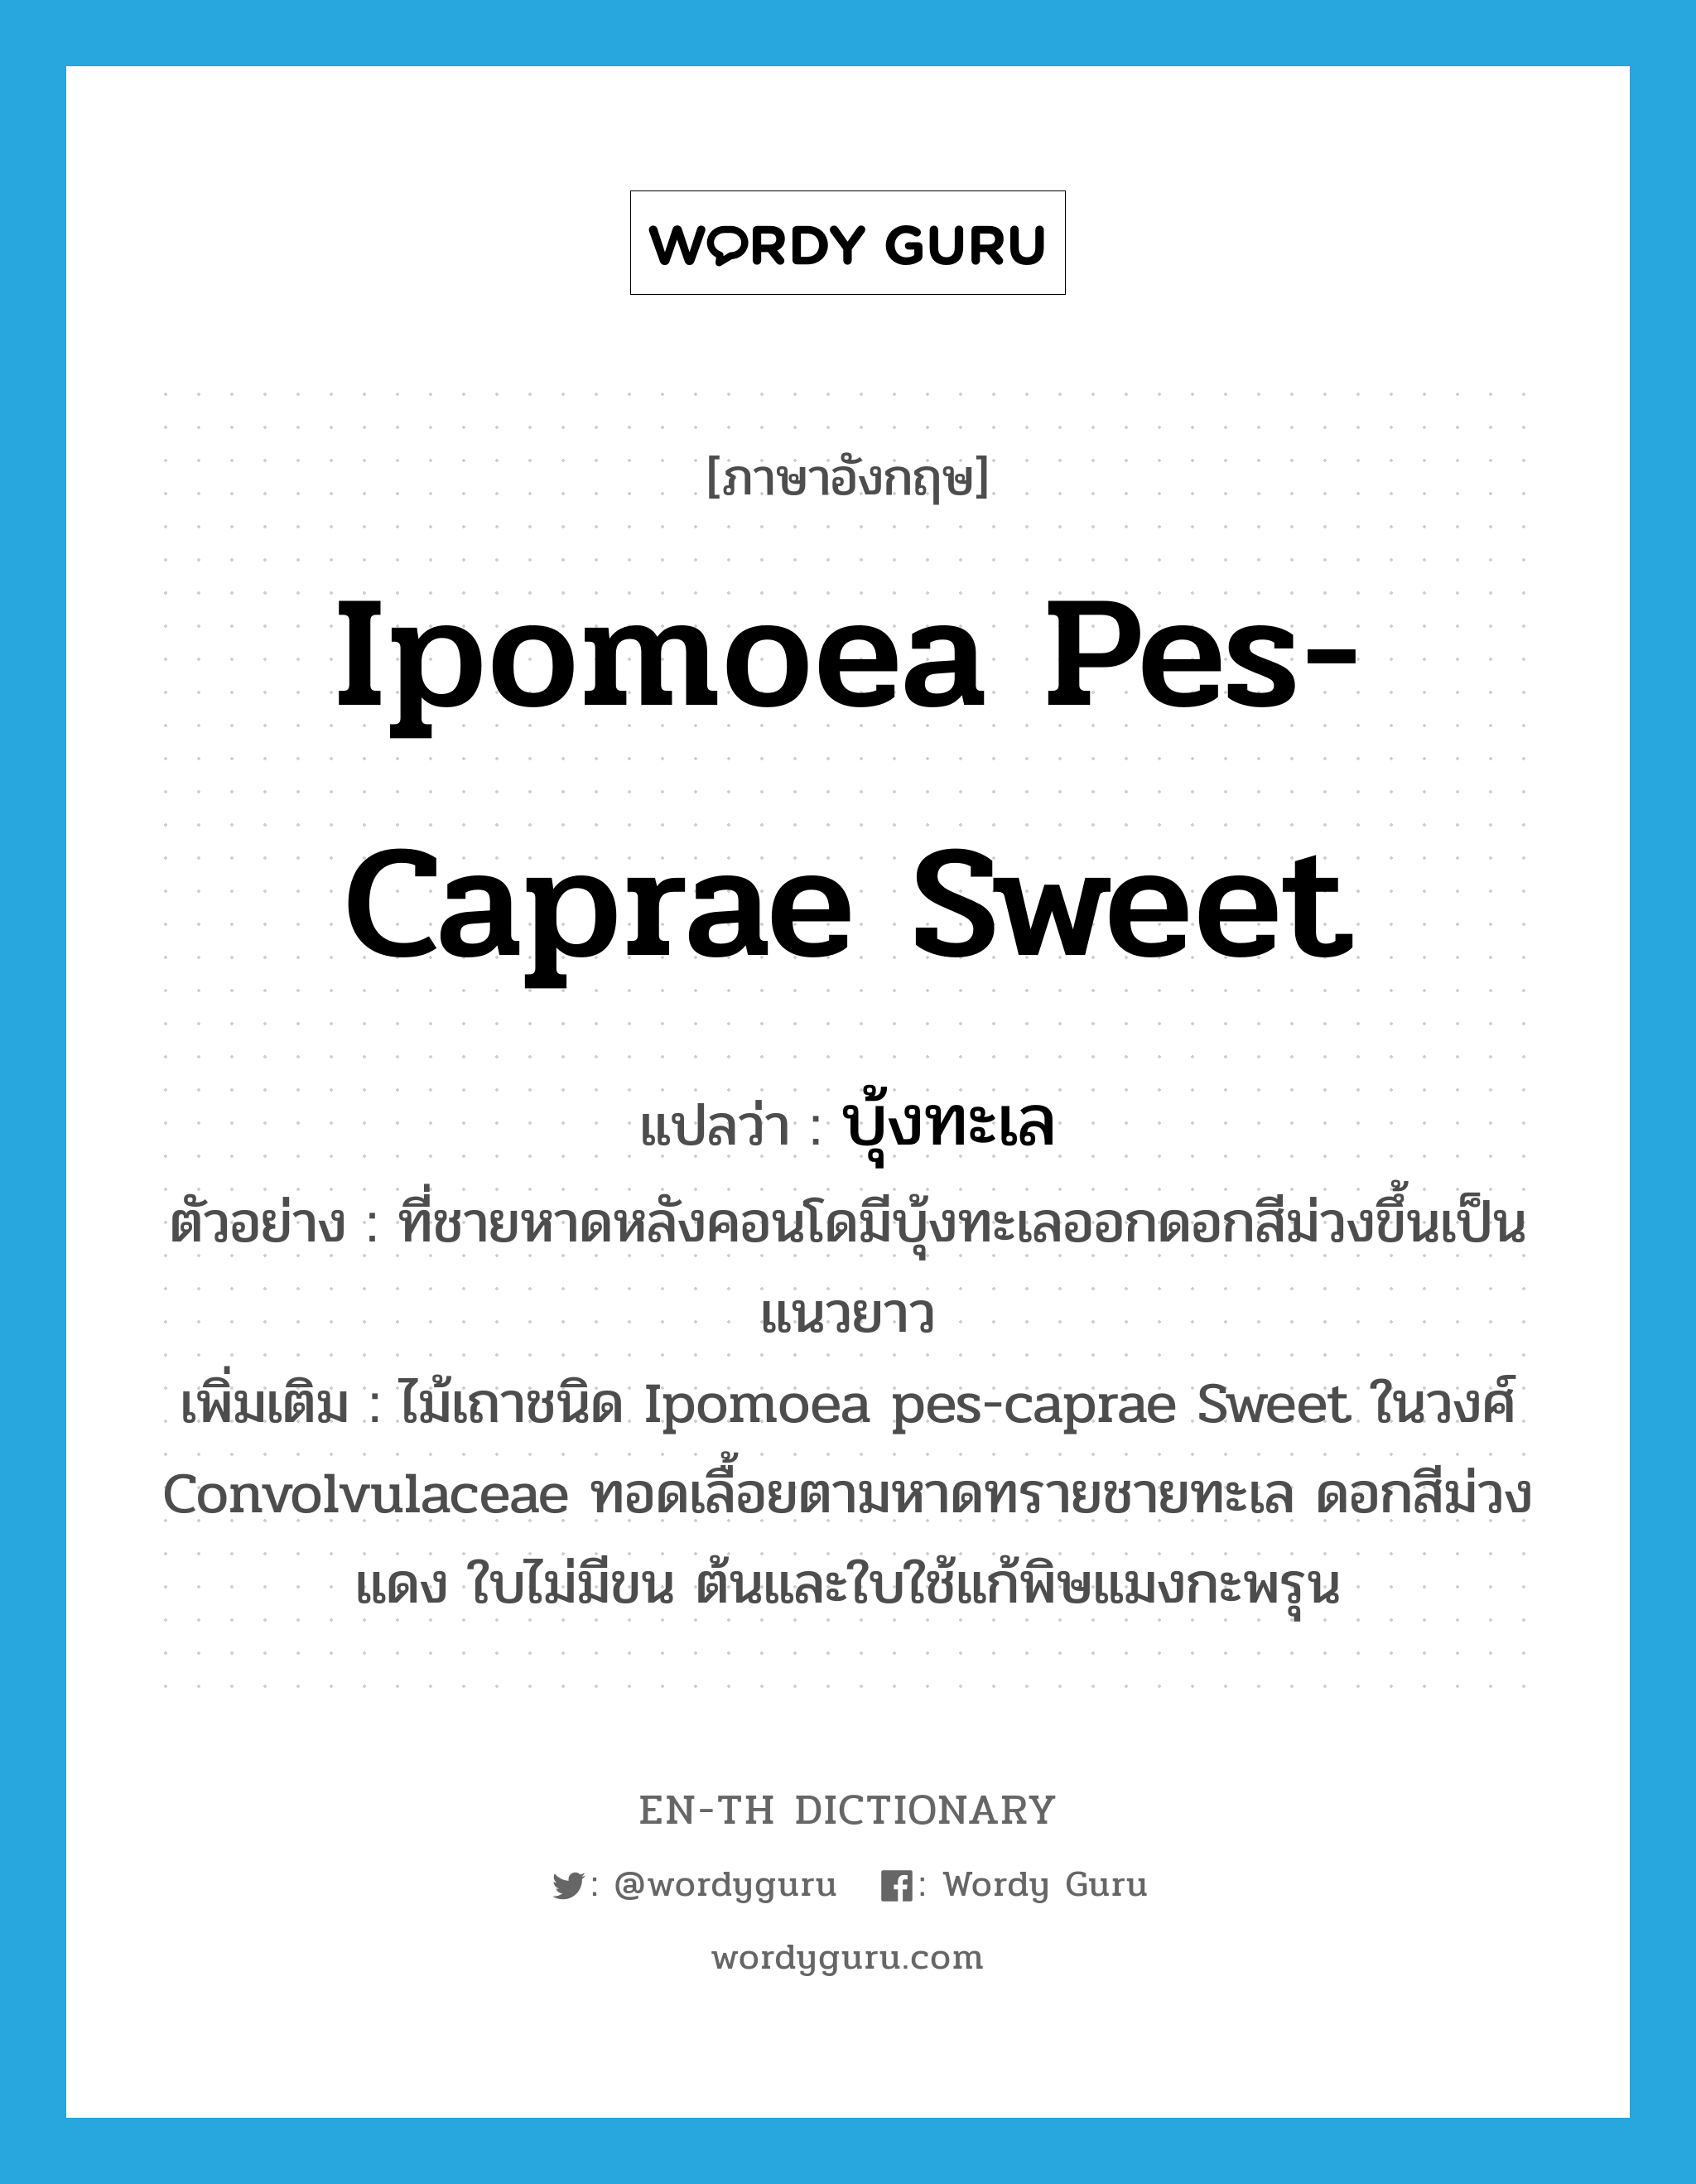 บุ้งทะเล ภาษาอังกฤษ?, คำศัพท์ภาษาอังกฤษ บุ้งทะเล แปลว่า Ipomoea pes-caprae Sweet ประเภท N ตัวอย่าง ที่ชายหาดหลังคอนโดมีบุ้งทะเลออกดอกสีม่วงขึ้นเป็นแนวยาว เพิ่มเติม ไม้เถาชนิด Ipomoea pes-caprae Sweet ในวงศ์ Convolvulaceae ทอดเลื้อยตามหาดทรายชายทะเล ดอกสีม่วงแดง ใบไม่มีขน ต้นและใบใช้แก้พิษแมงกะพรุน หมวด N